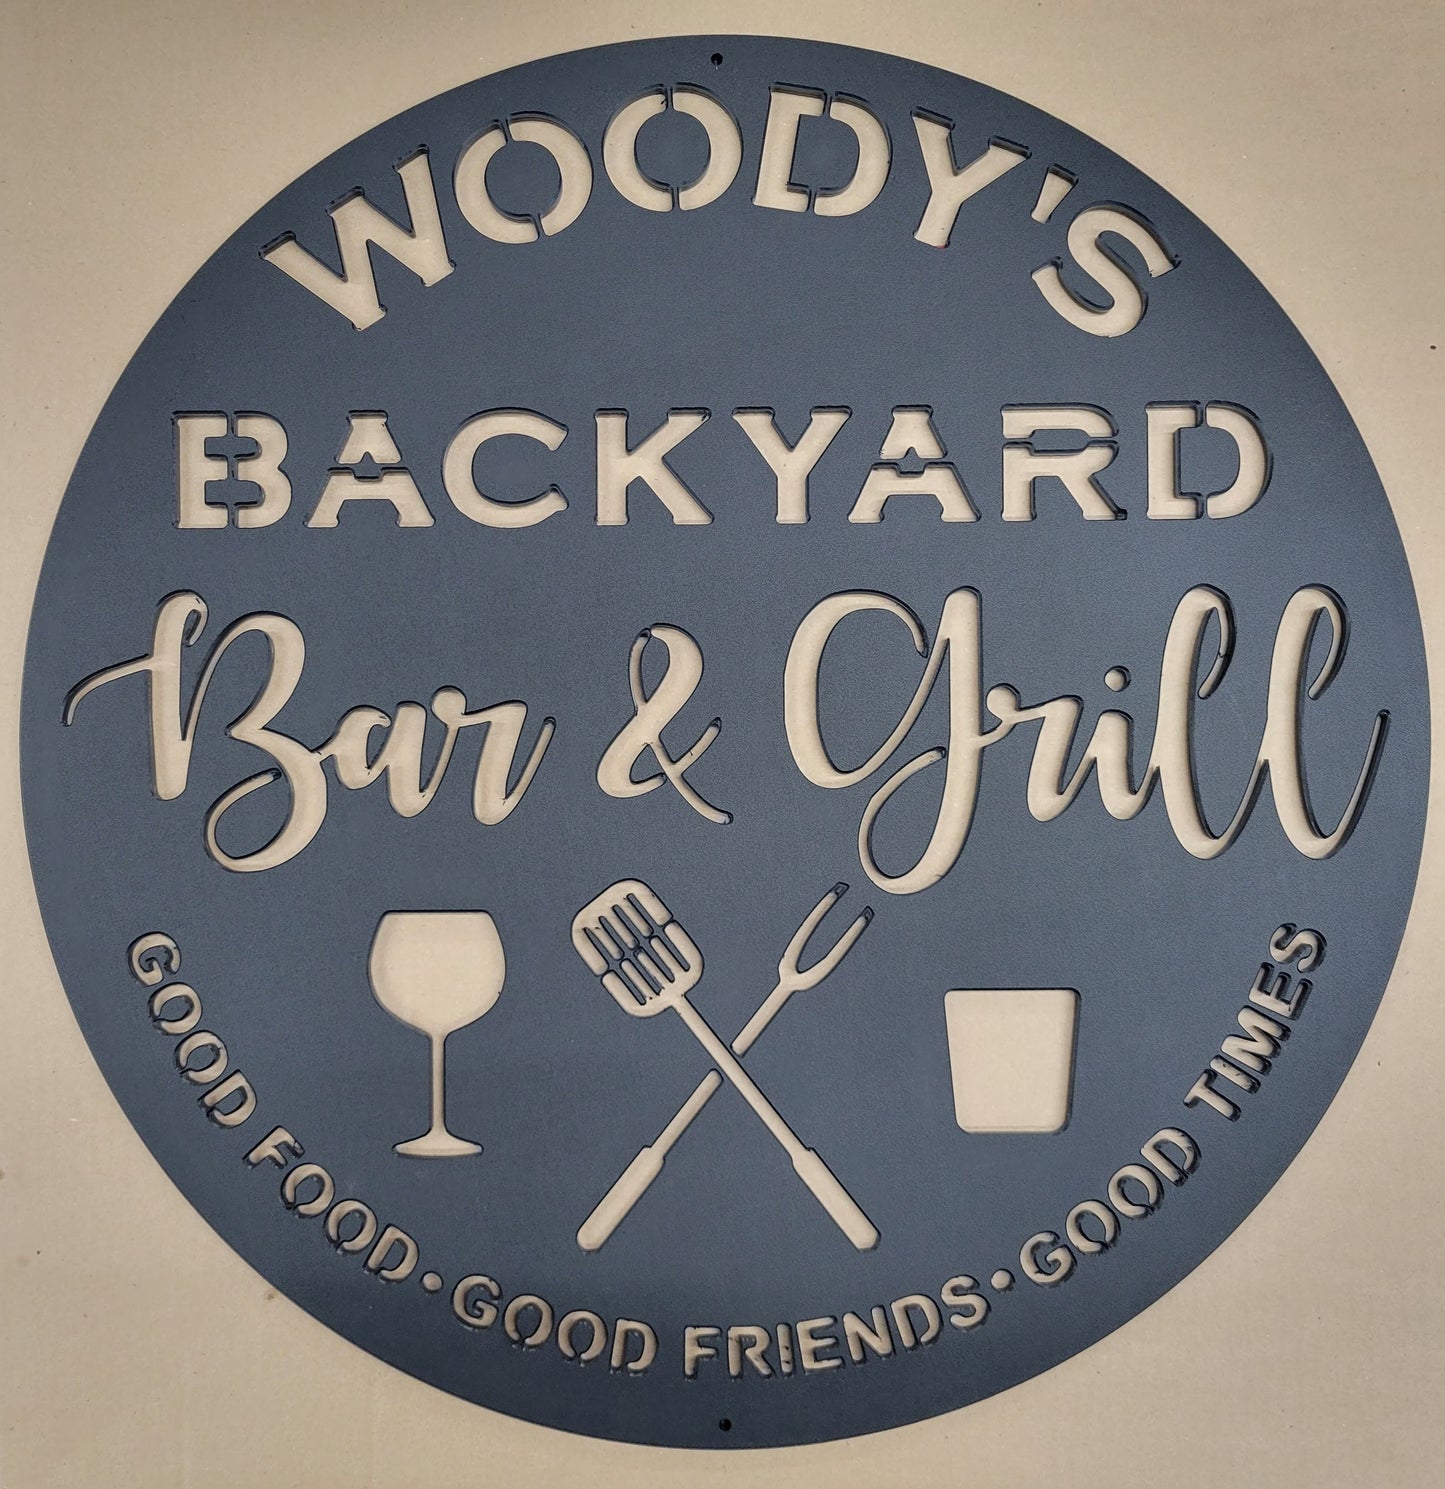 Custom Backyard Bar & Grill Sign